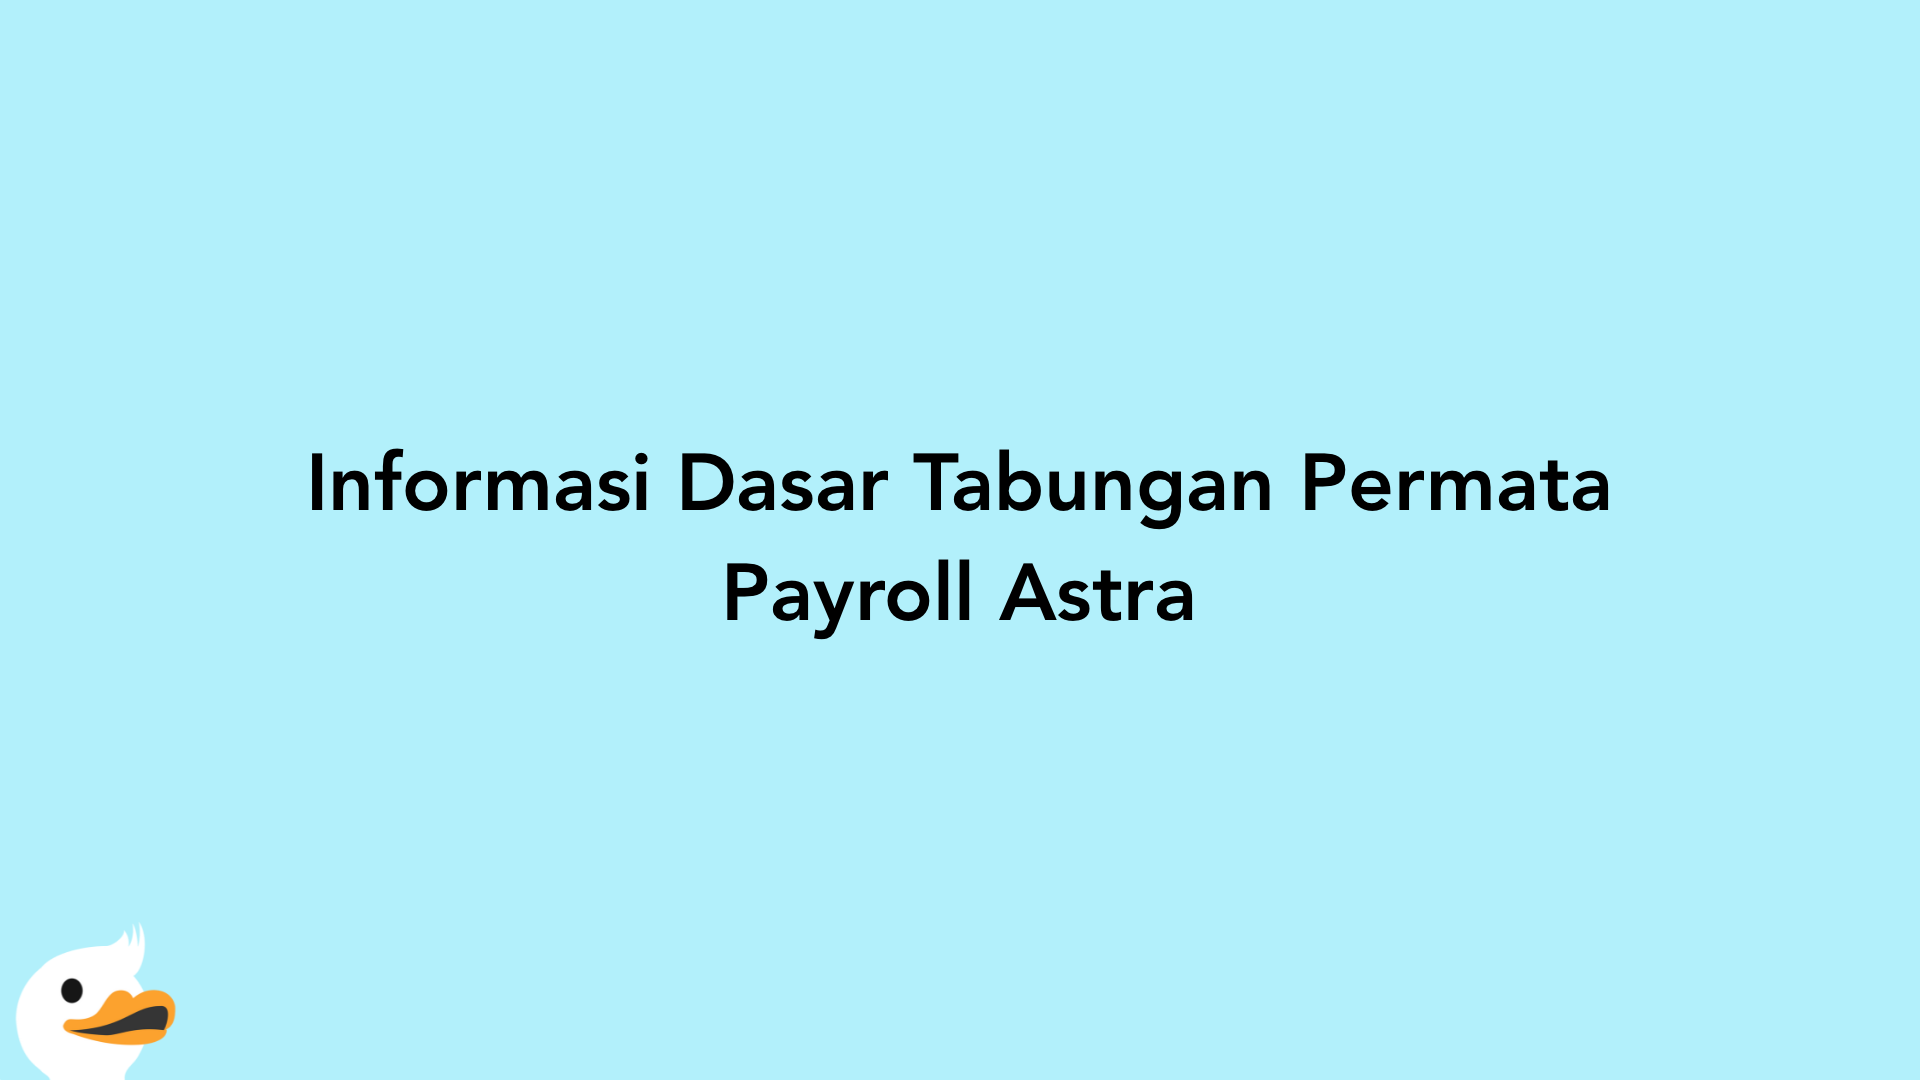 Informasi Dasar Tabungan Permata Payroll Astra